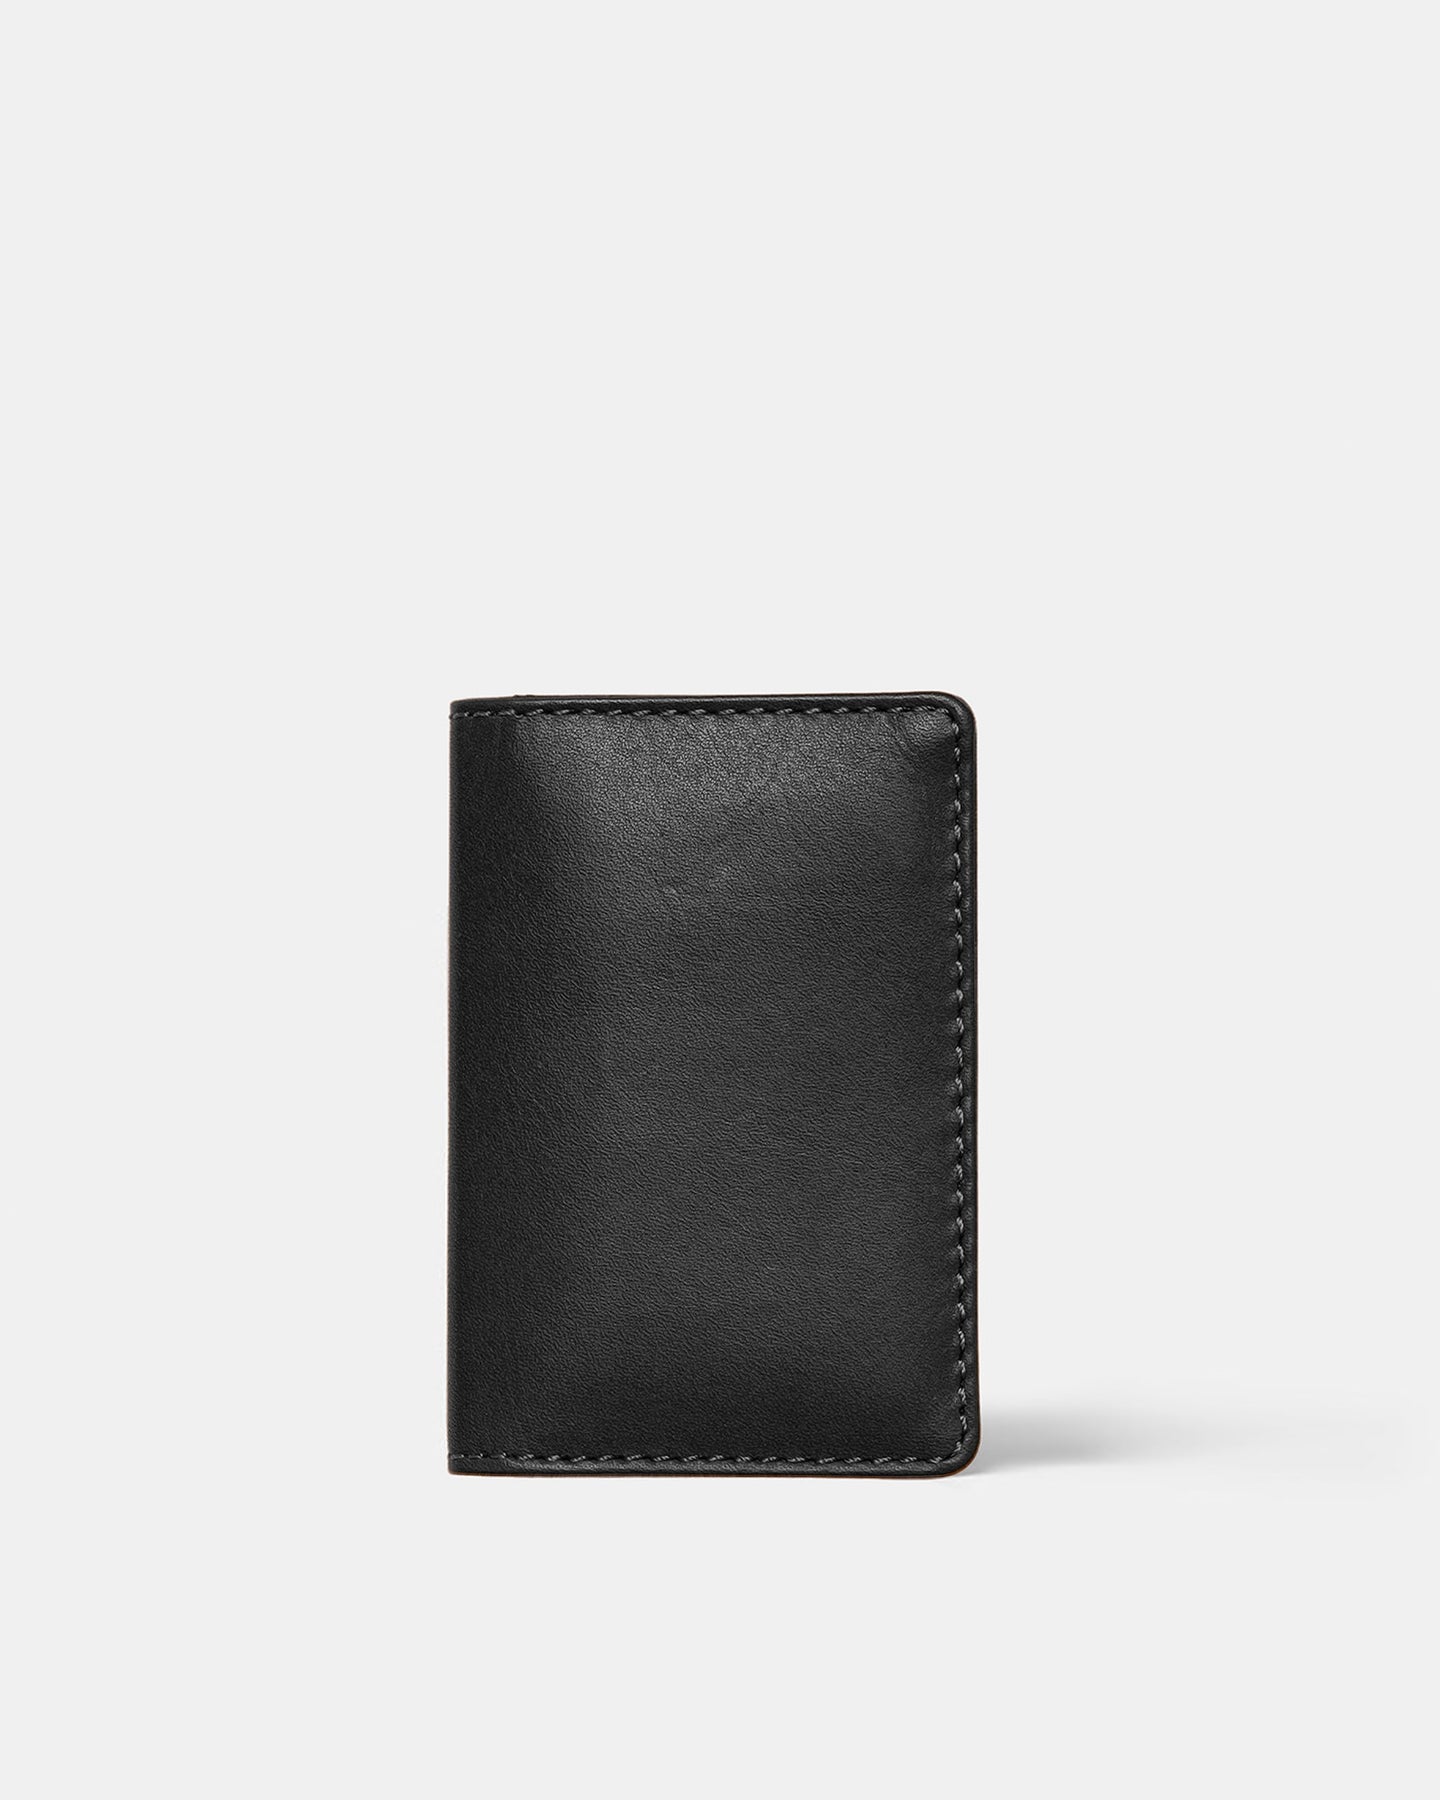 Slim & Minimilast Leather Wallet – Ryokō